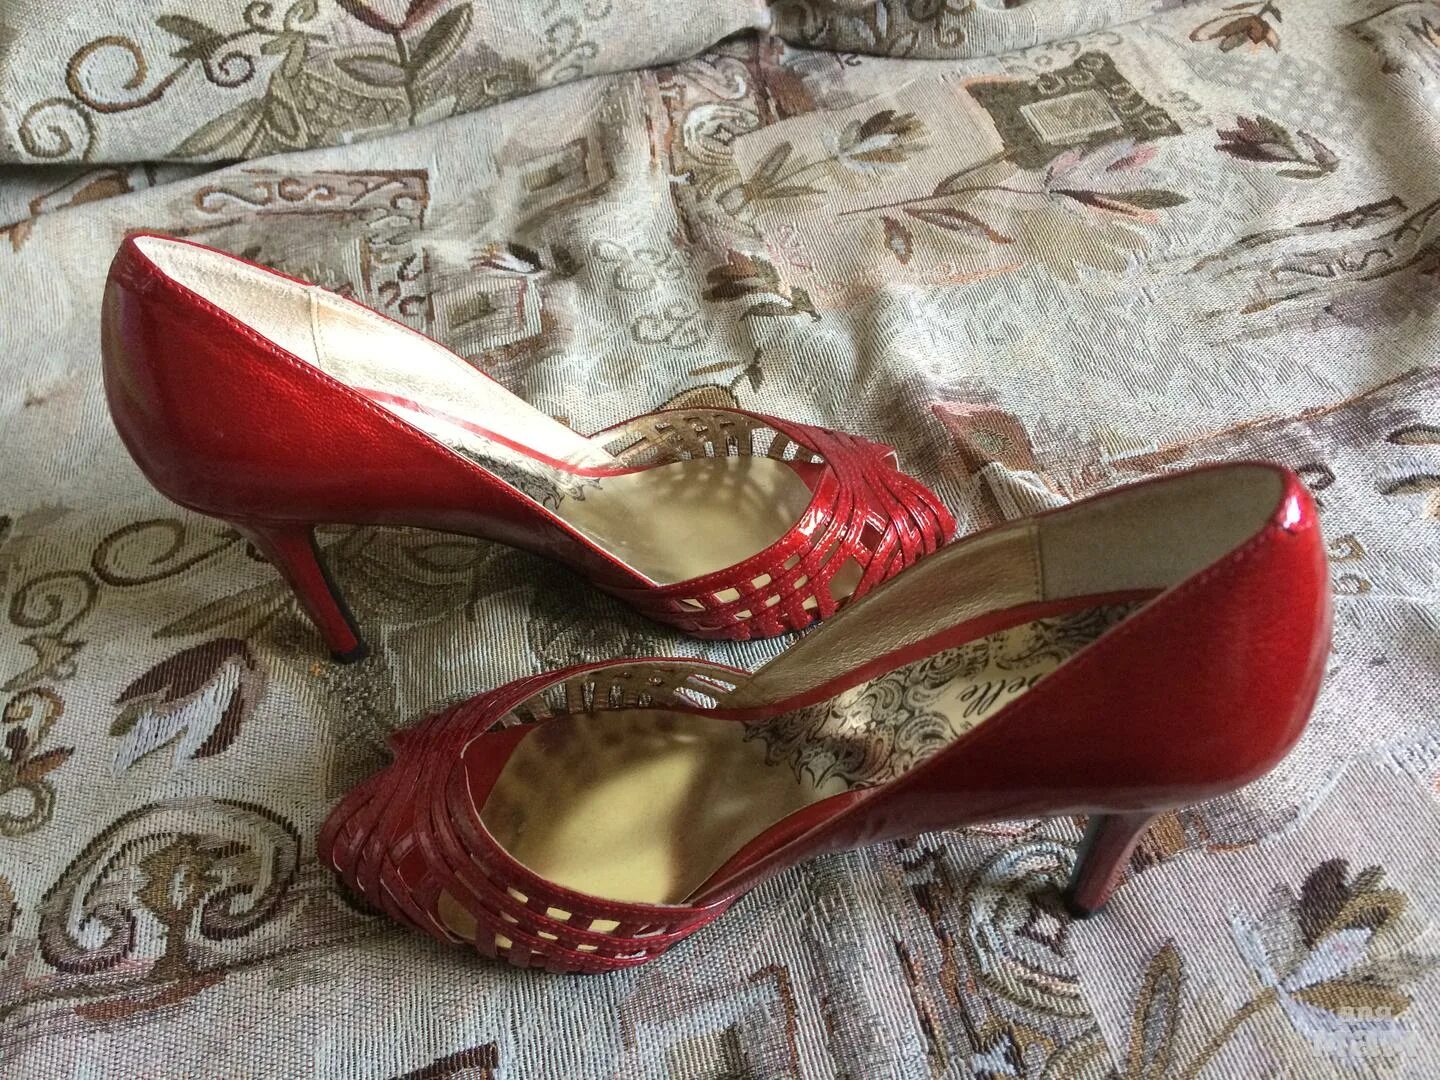 Авито туфли женские. Авито обувь женская. Авито туфли красные женские. Авито туфли женские 37 размер. Авито обувь объявления